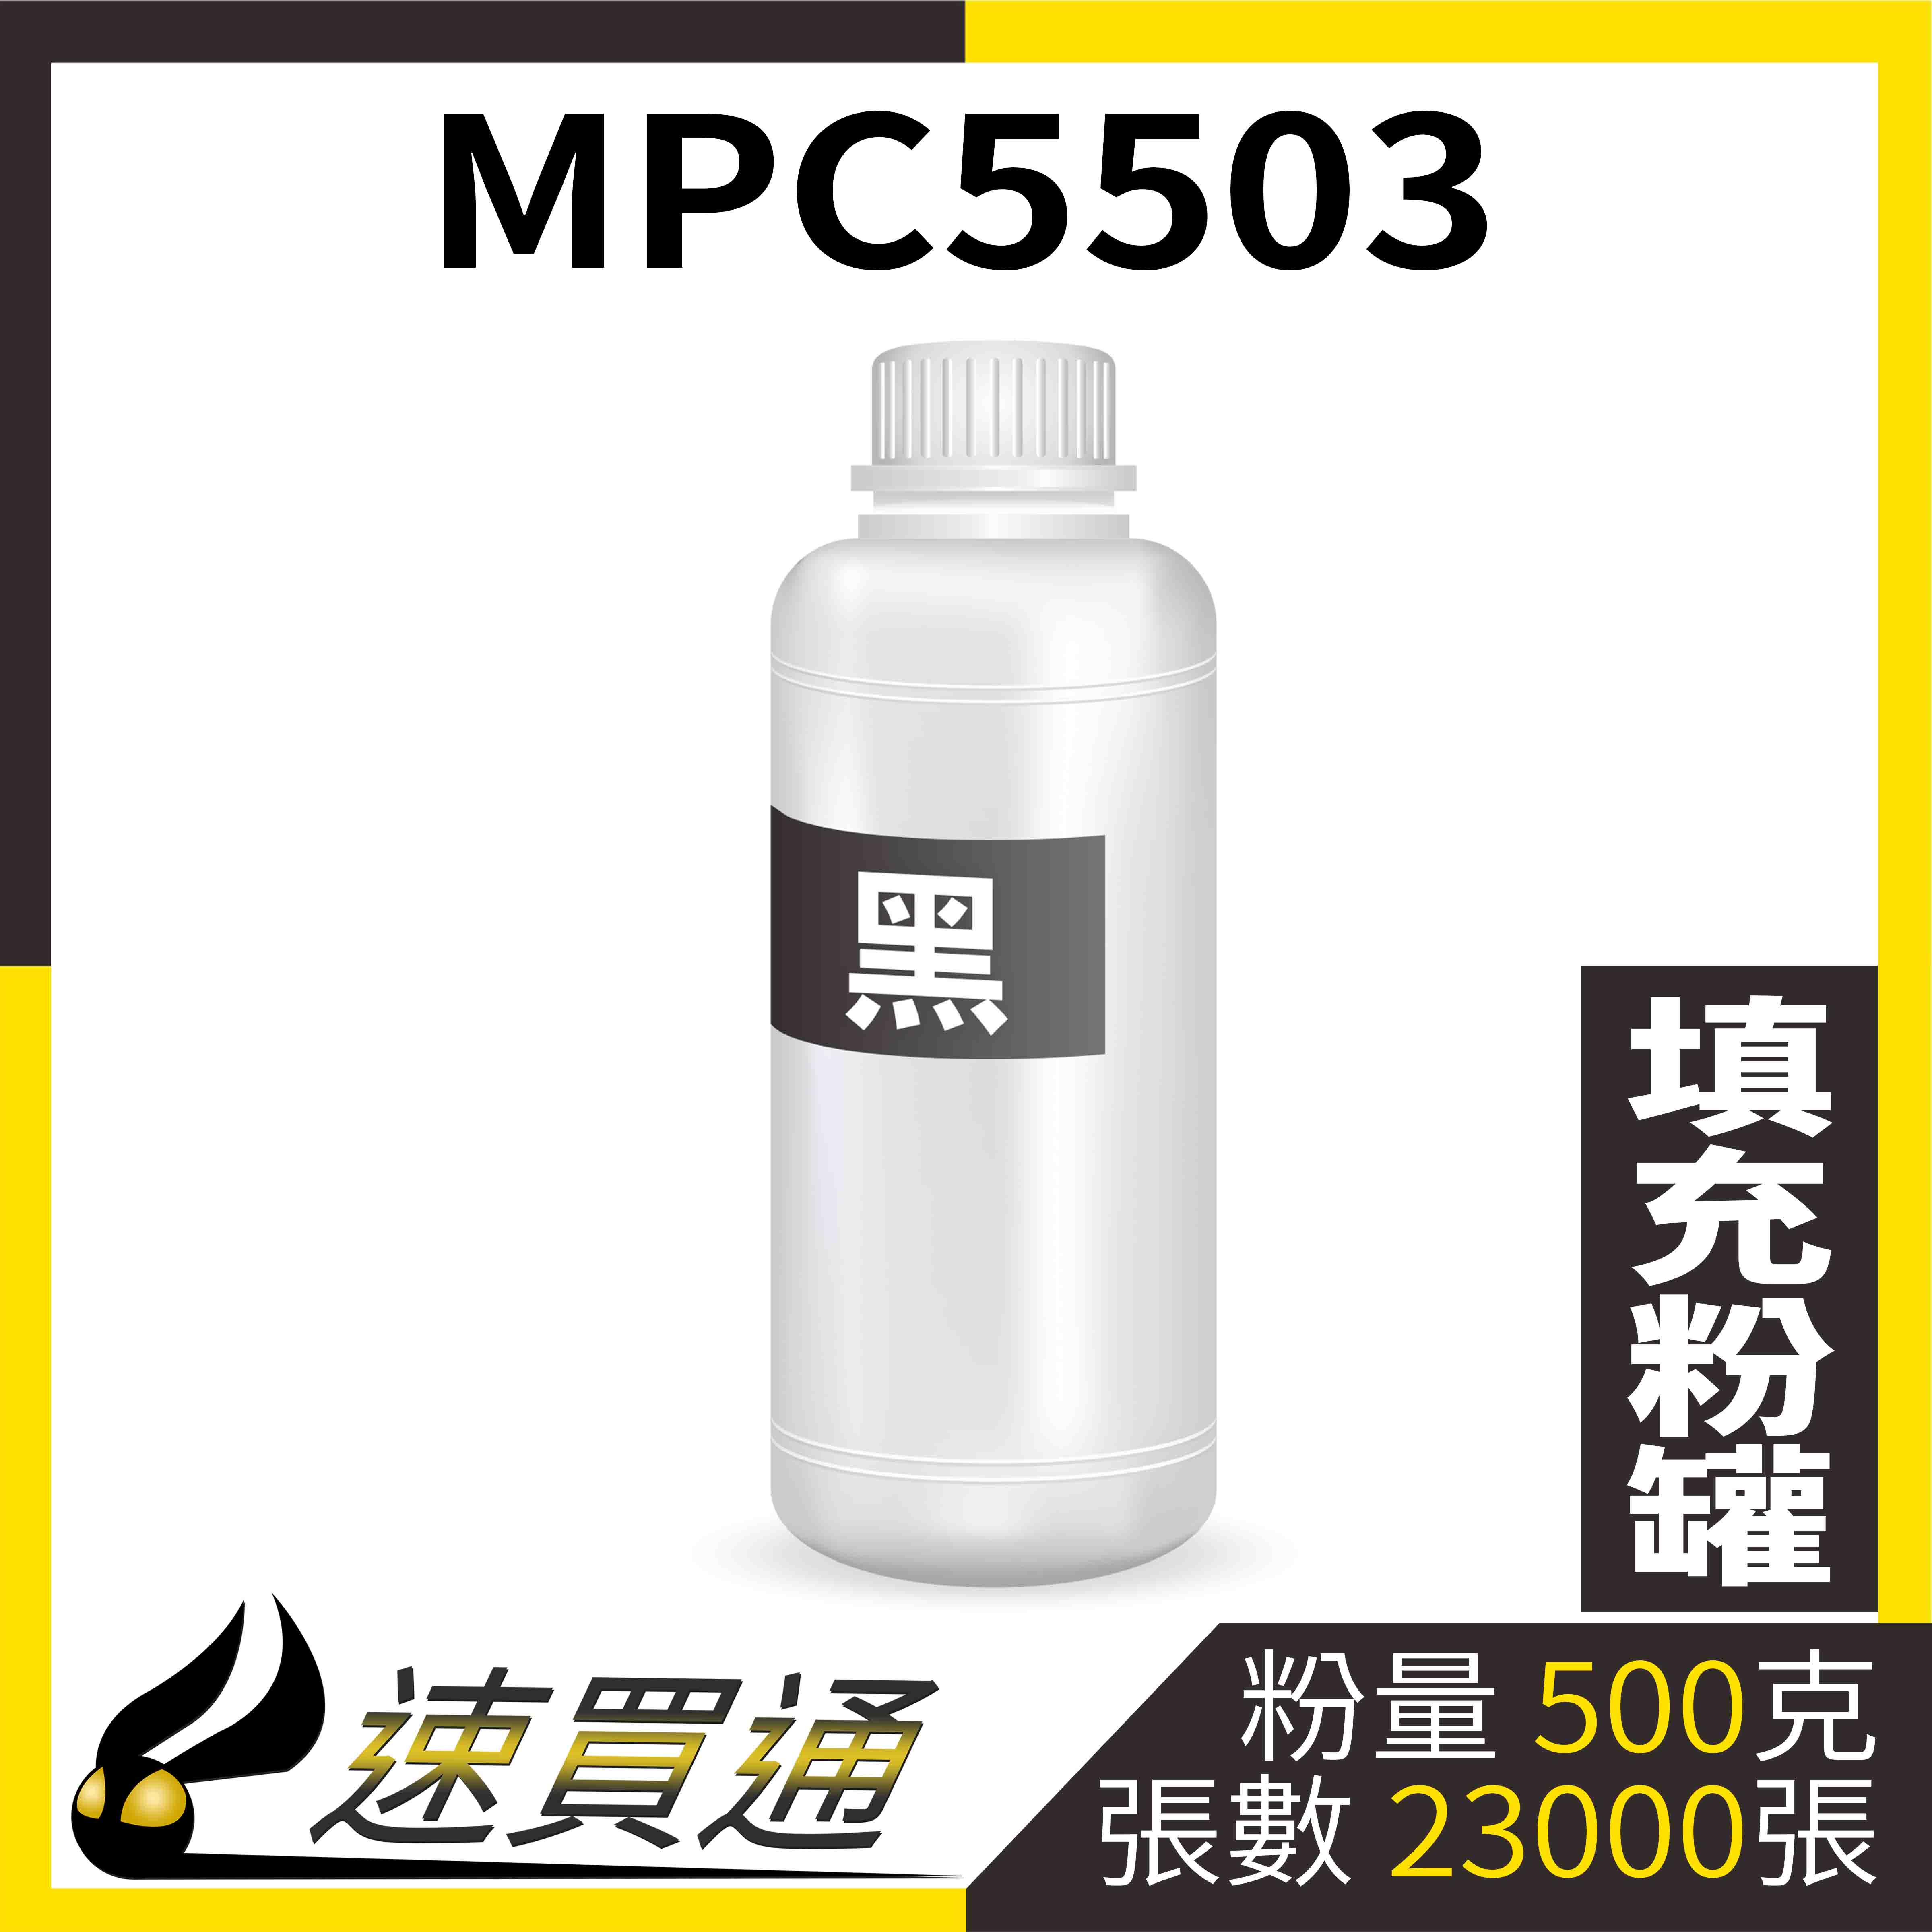 【速買通】RICOH MPC5503 黑 填充式碳粉罐